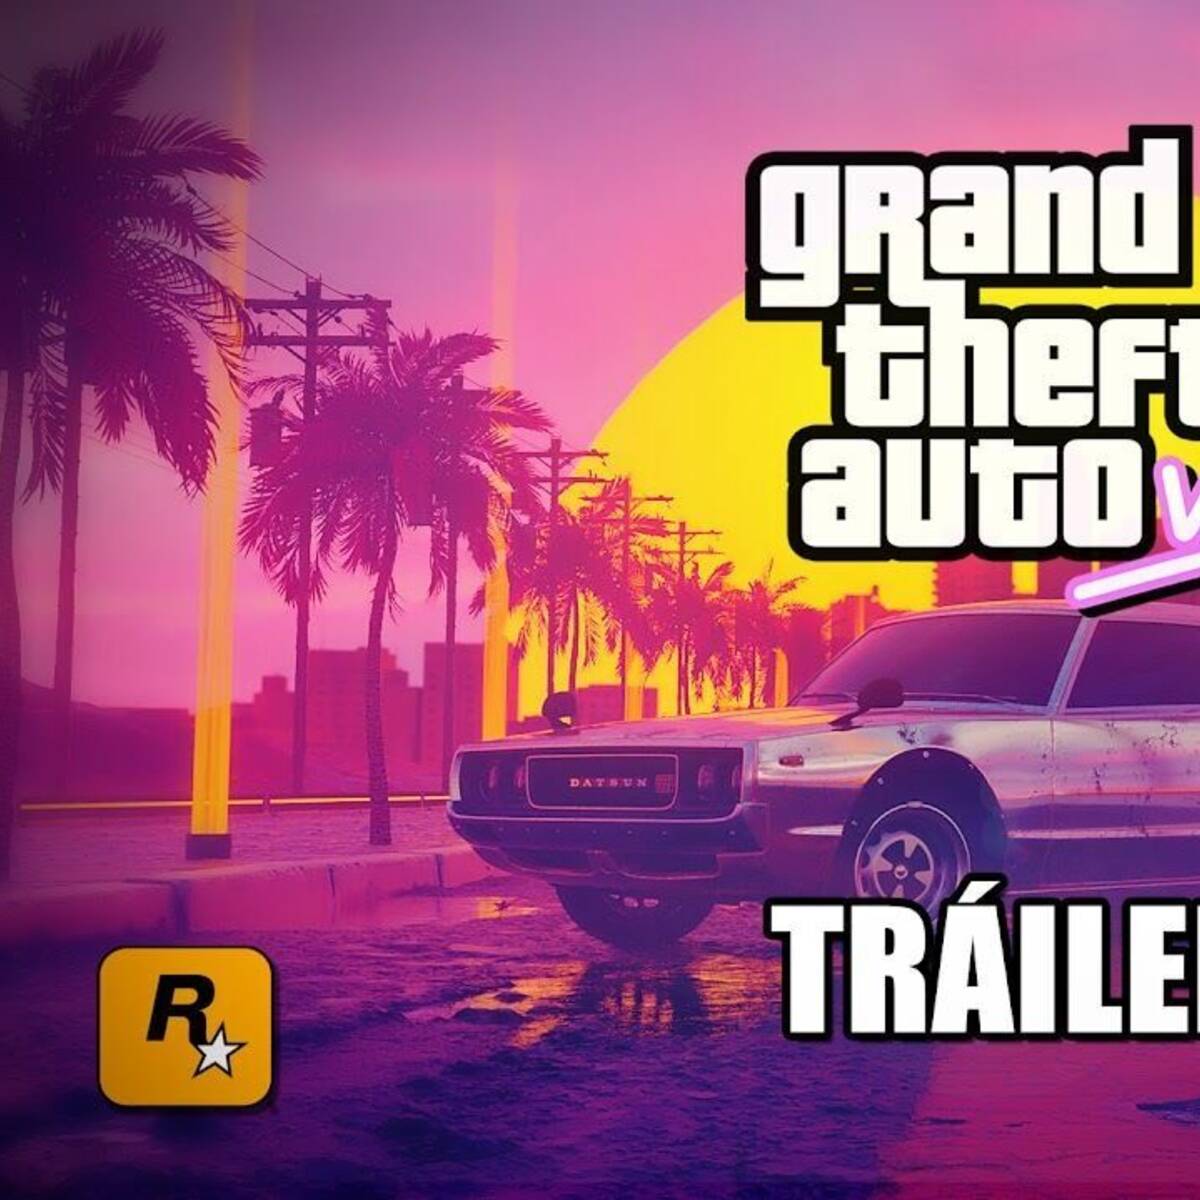 Rockstar anuncia trailer de GTA VI para a próxima terça-feira (5) - Folha BV